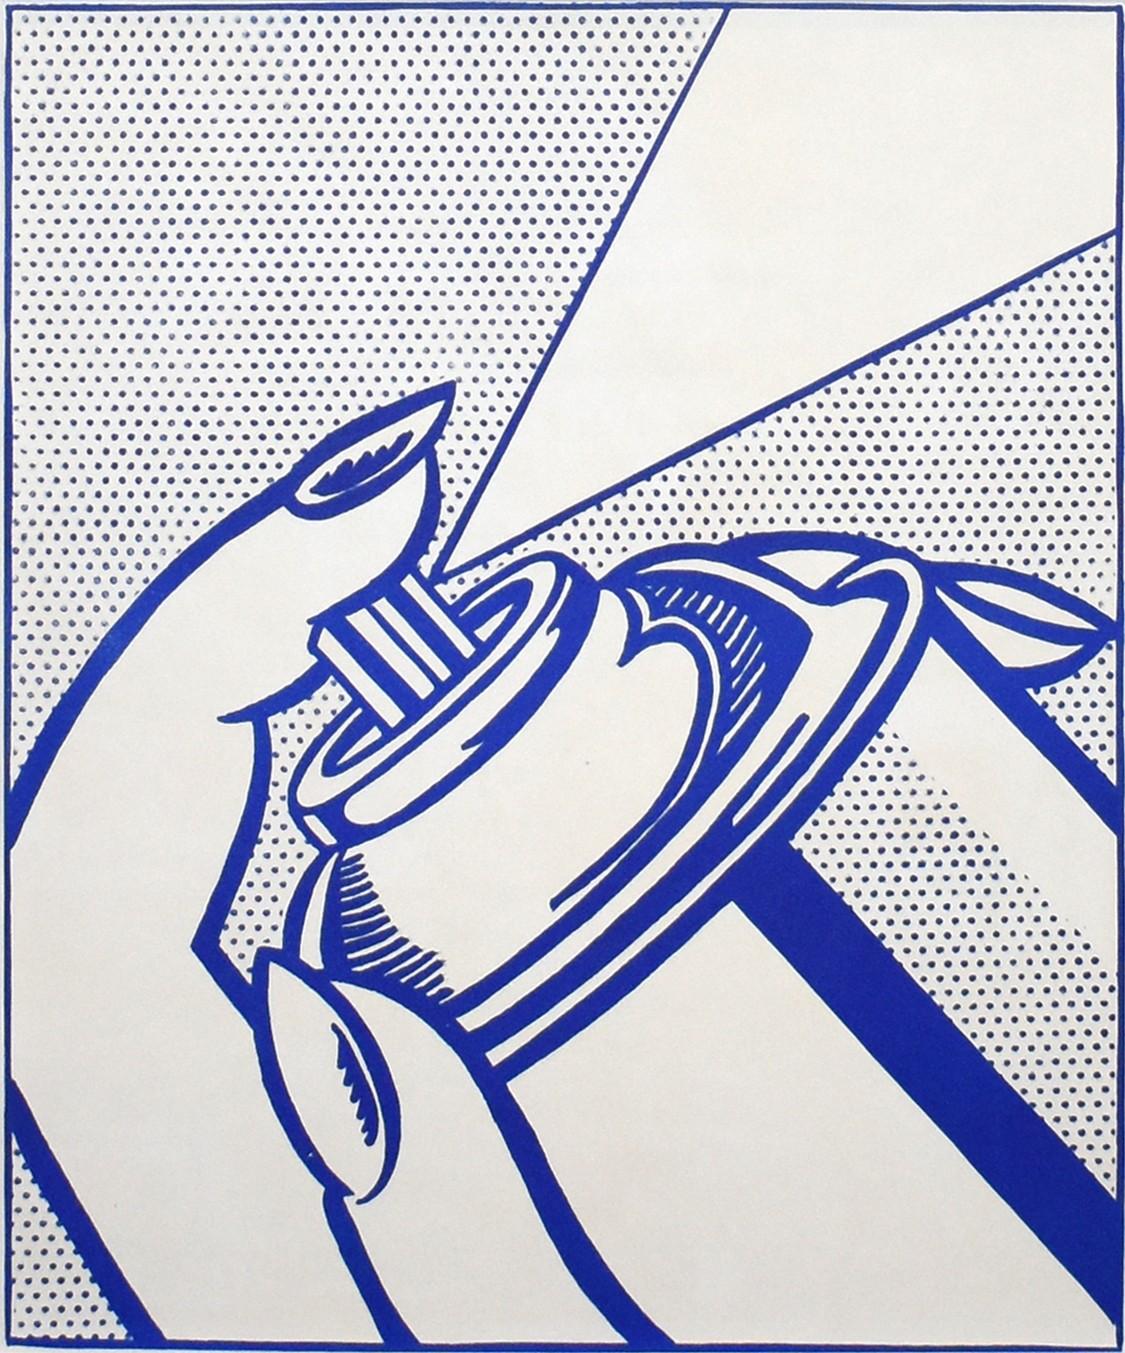 Artistics : Roy Lichtenstein
Support : Lithographie sur papier vélin blanc
Titre : Spray Can
Portefeuille : 1963 1¢ Life
Année : 1963
Edition : 2000
Encadré Taille : 20 1/4 x 19 1/4 pouces
Taille de la feuille : 16" x 11 1/2"
Taille de l'image : 12